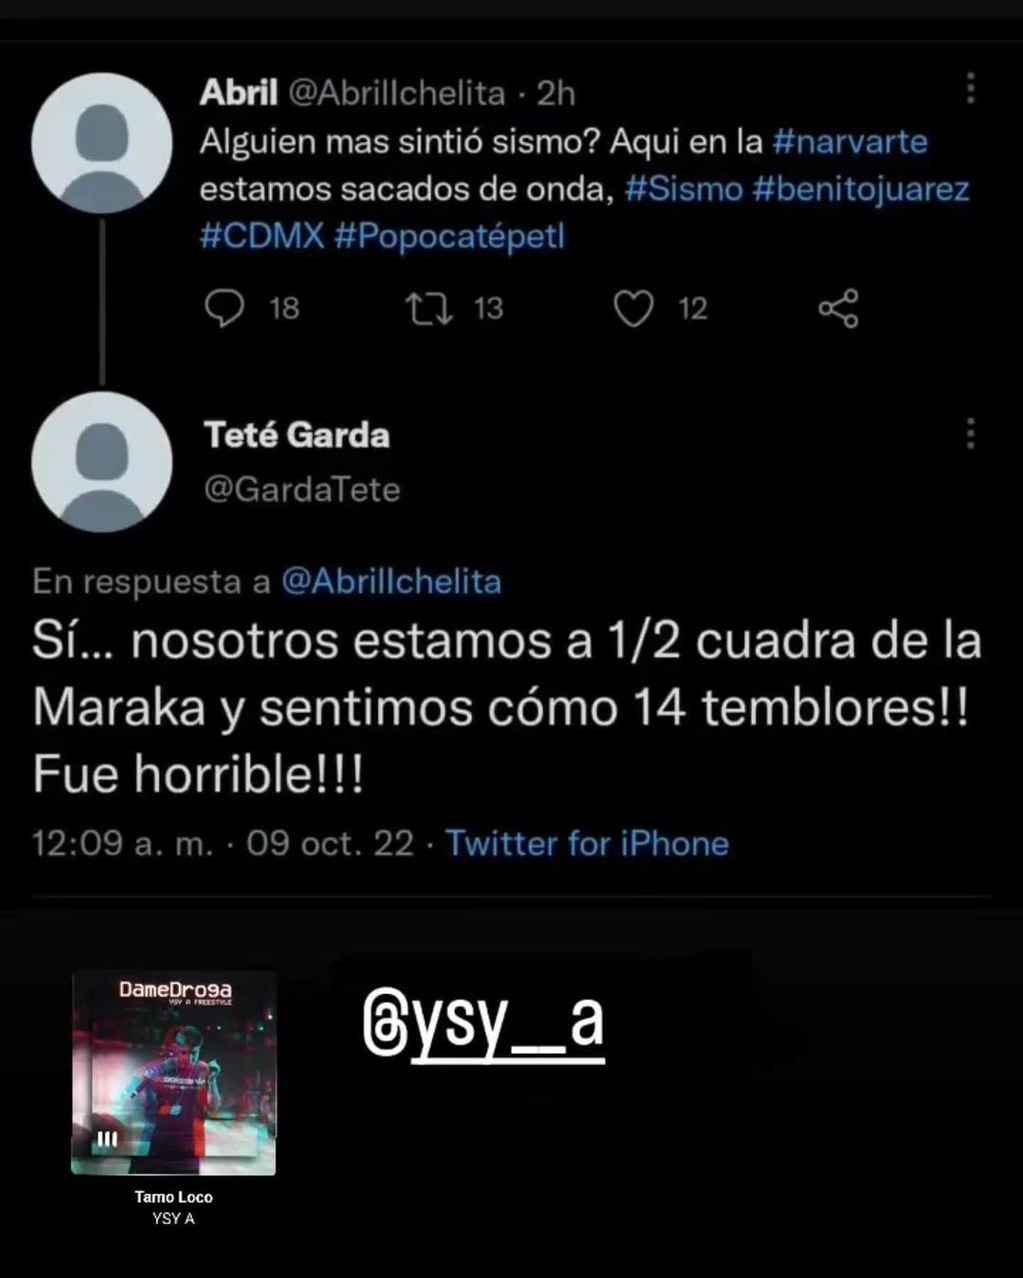 El verdadero “Ysysmo”: Ysy A debió cancelar su show en México por causar temblores